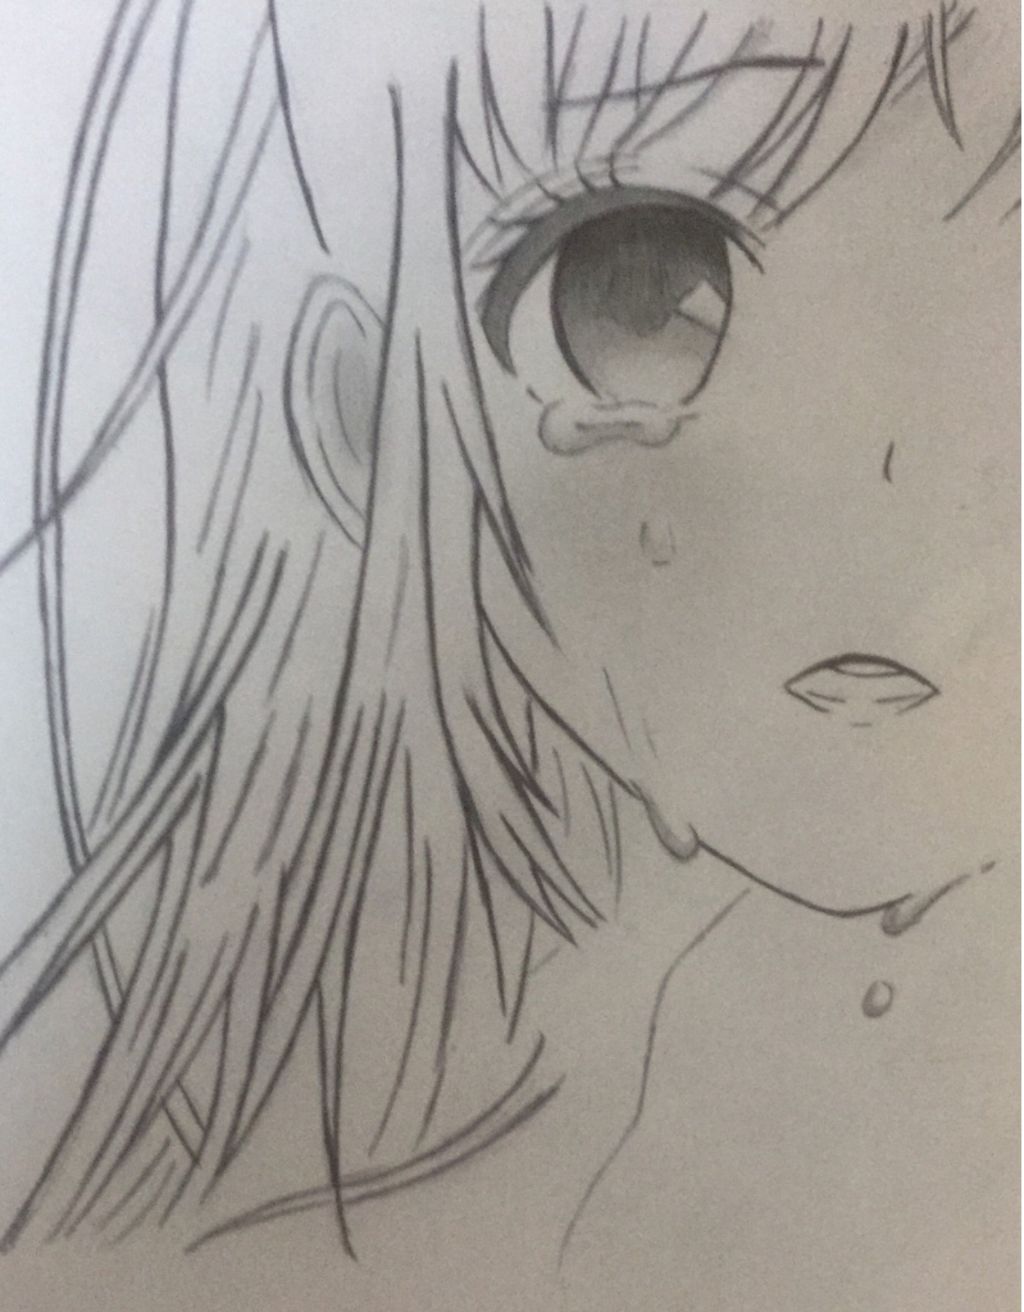 Các bạn nhanh tay nào! Vẽ cho mk một anime girl cực xinh nha! Các ...